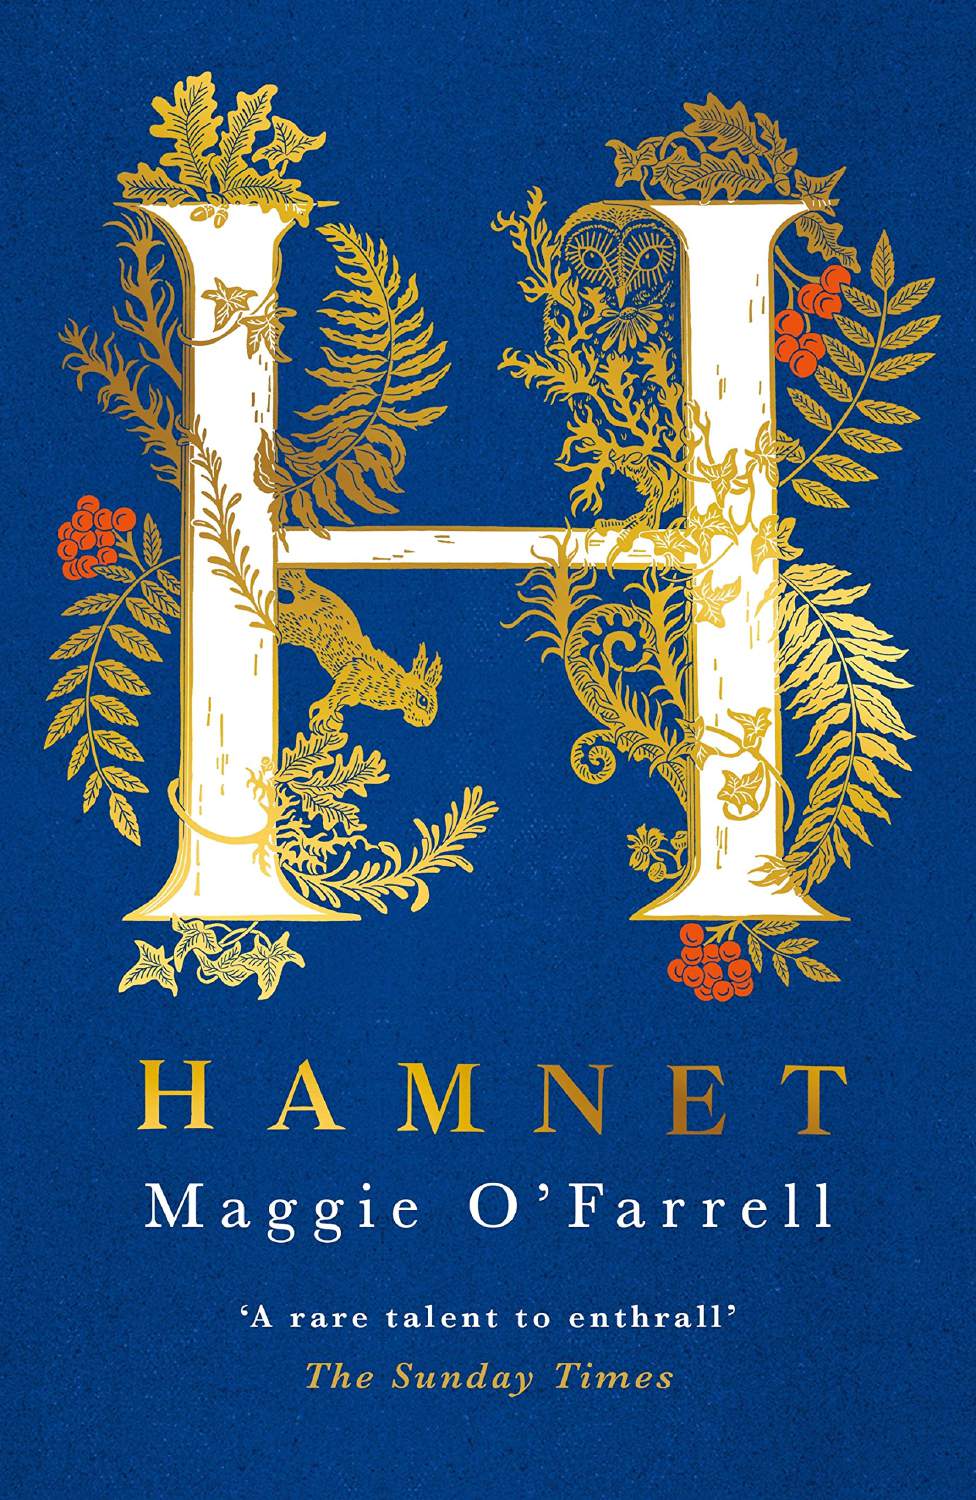 Book Review: Hamnet 